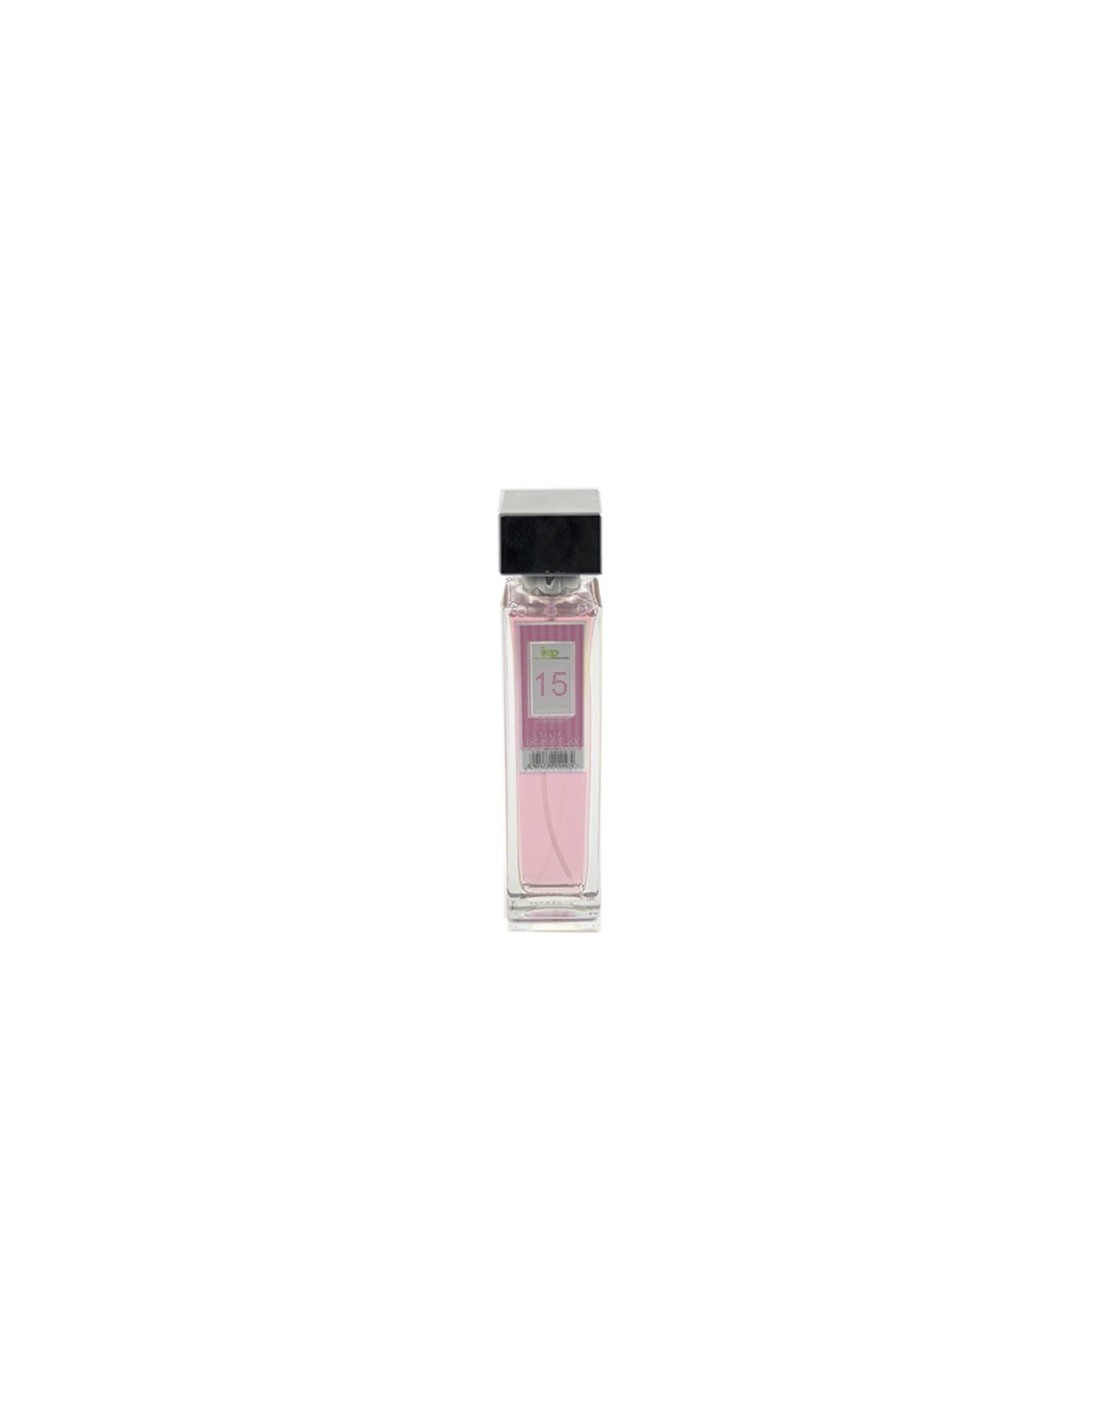 IAP Perfume Mujer N15 150ml